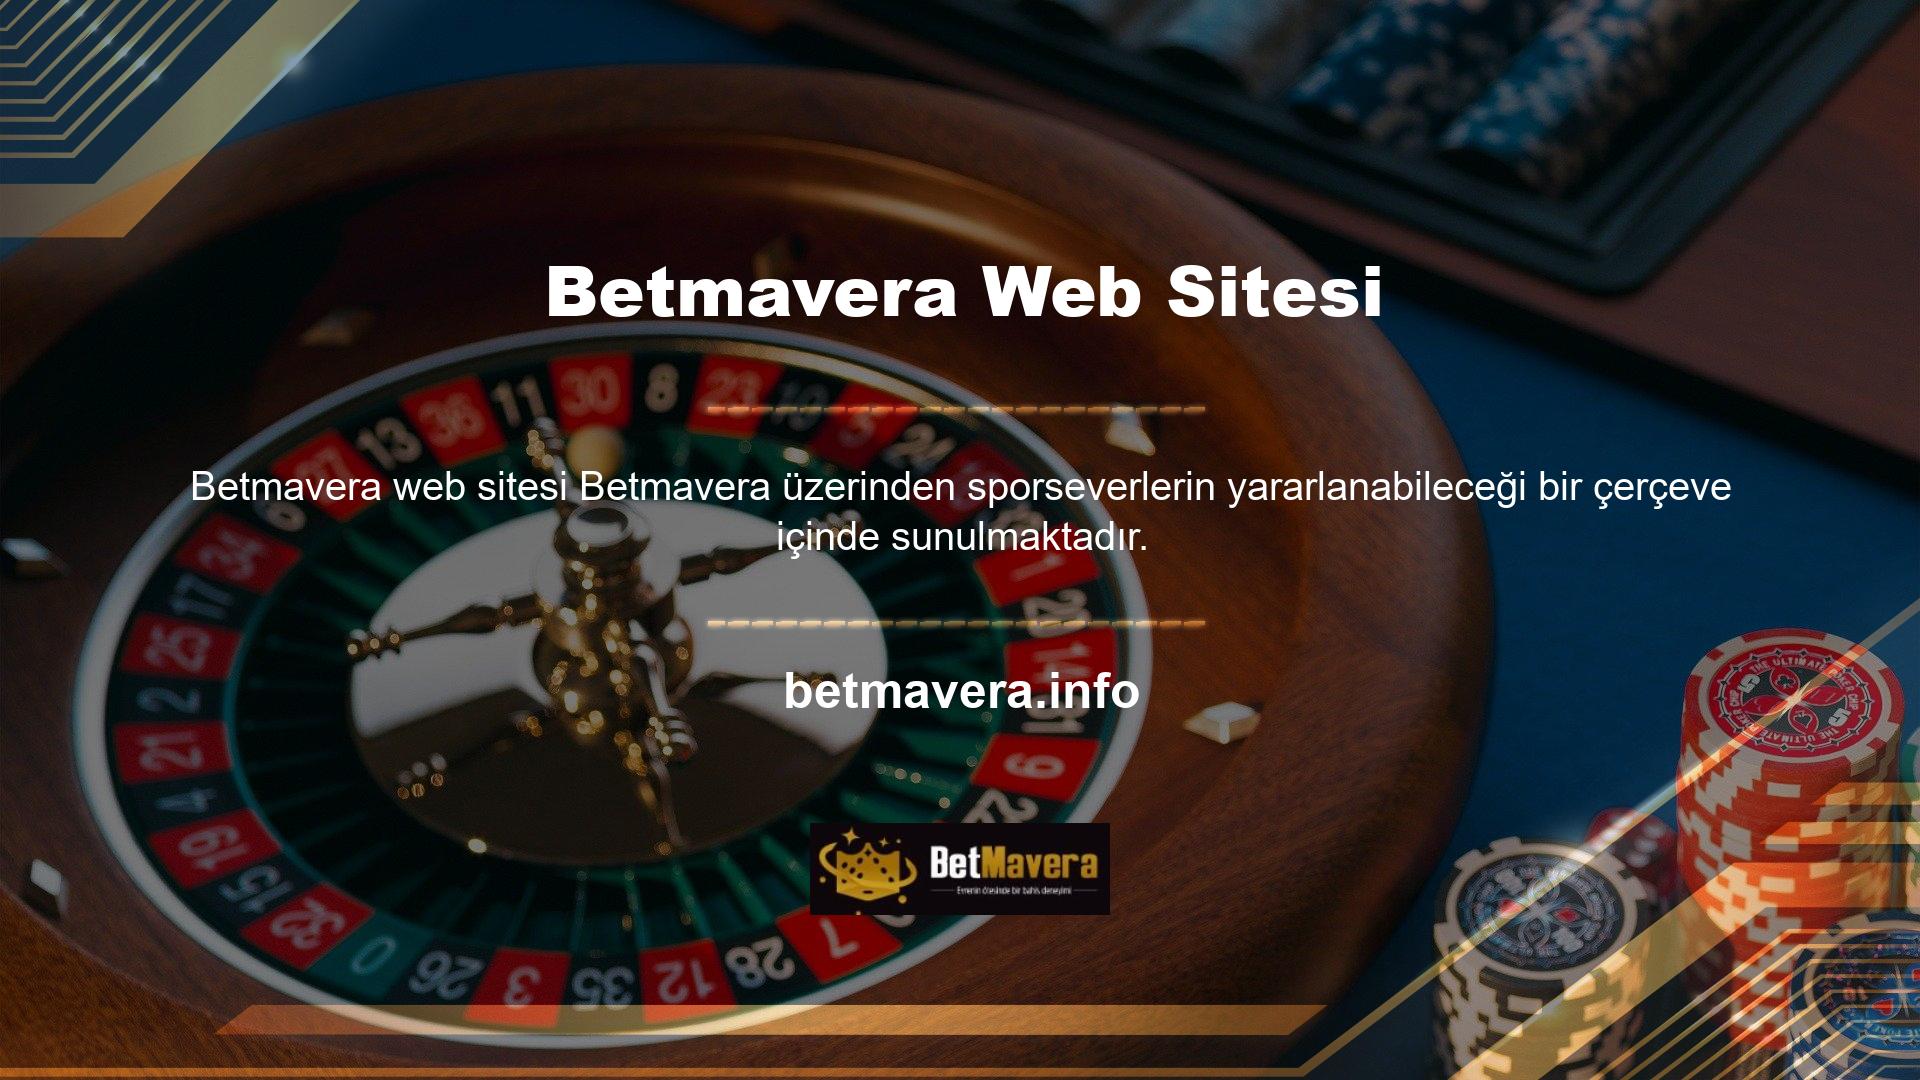 Betmavera, canlı yayınları karşılığında hiçbir şey istemeyen sitelerden biridir